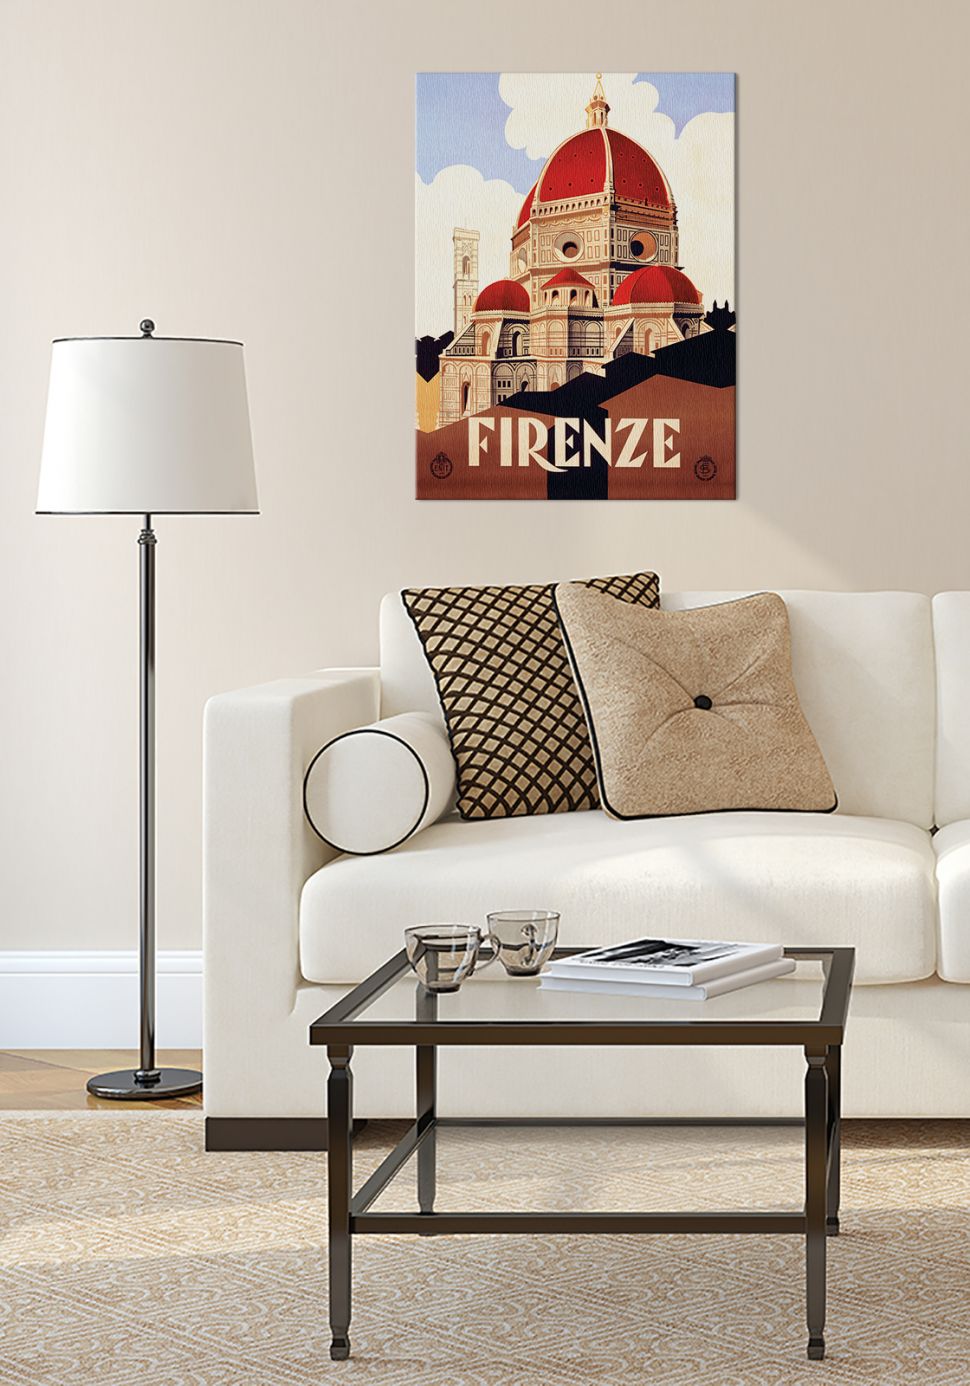 Obraz na płótnie Firenze wiszący w salonie na białej ścianie nad jasną kanapą